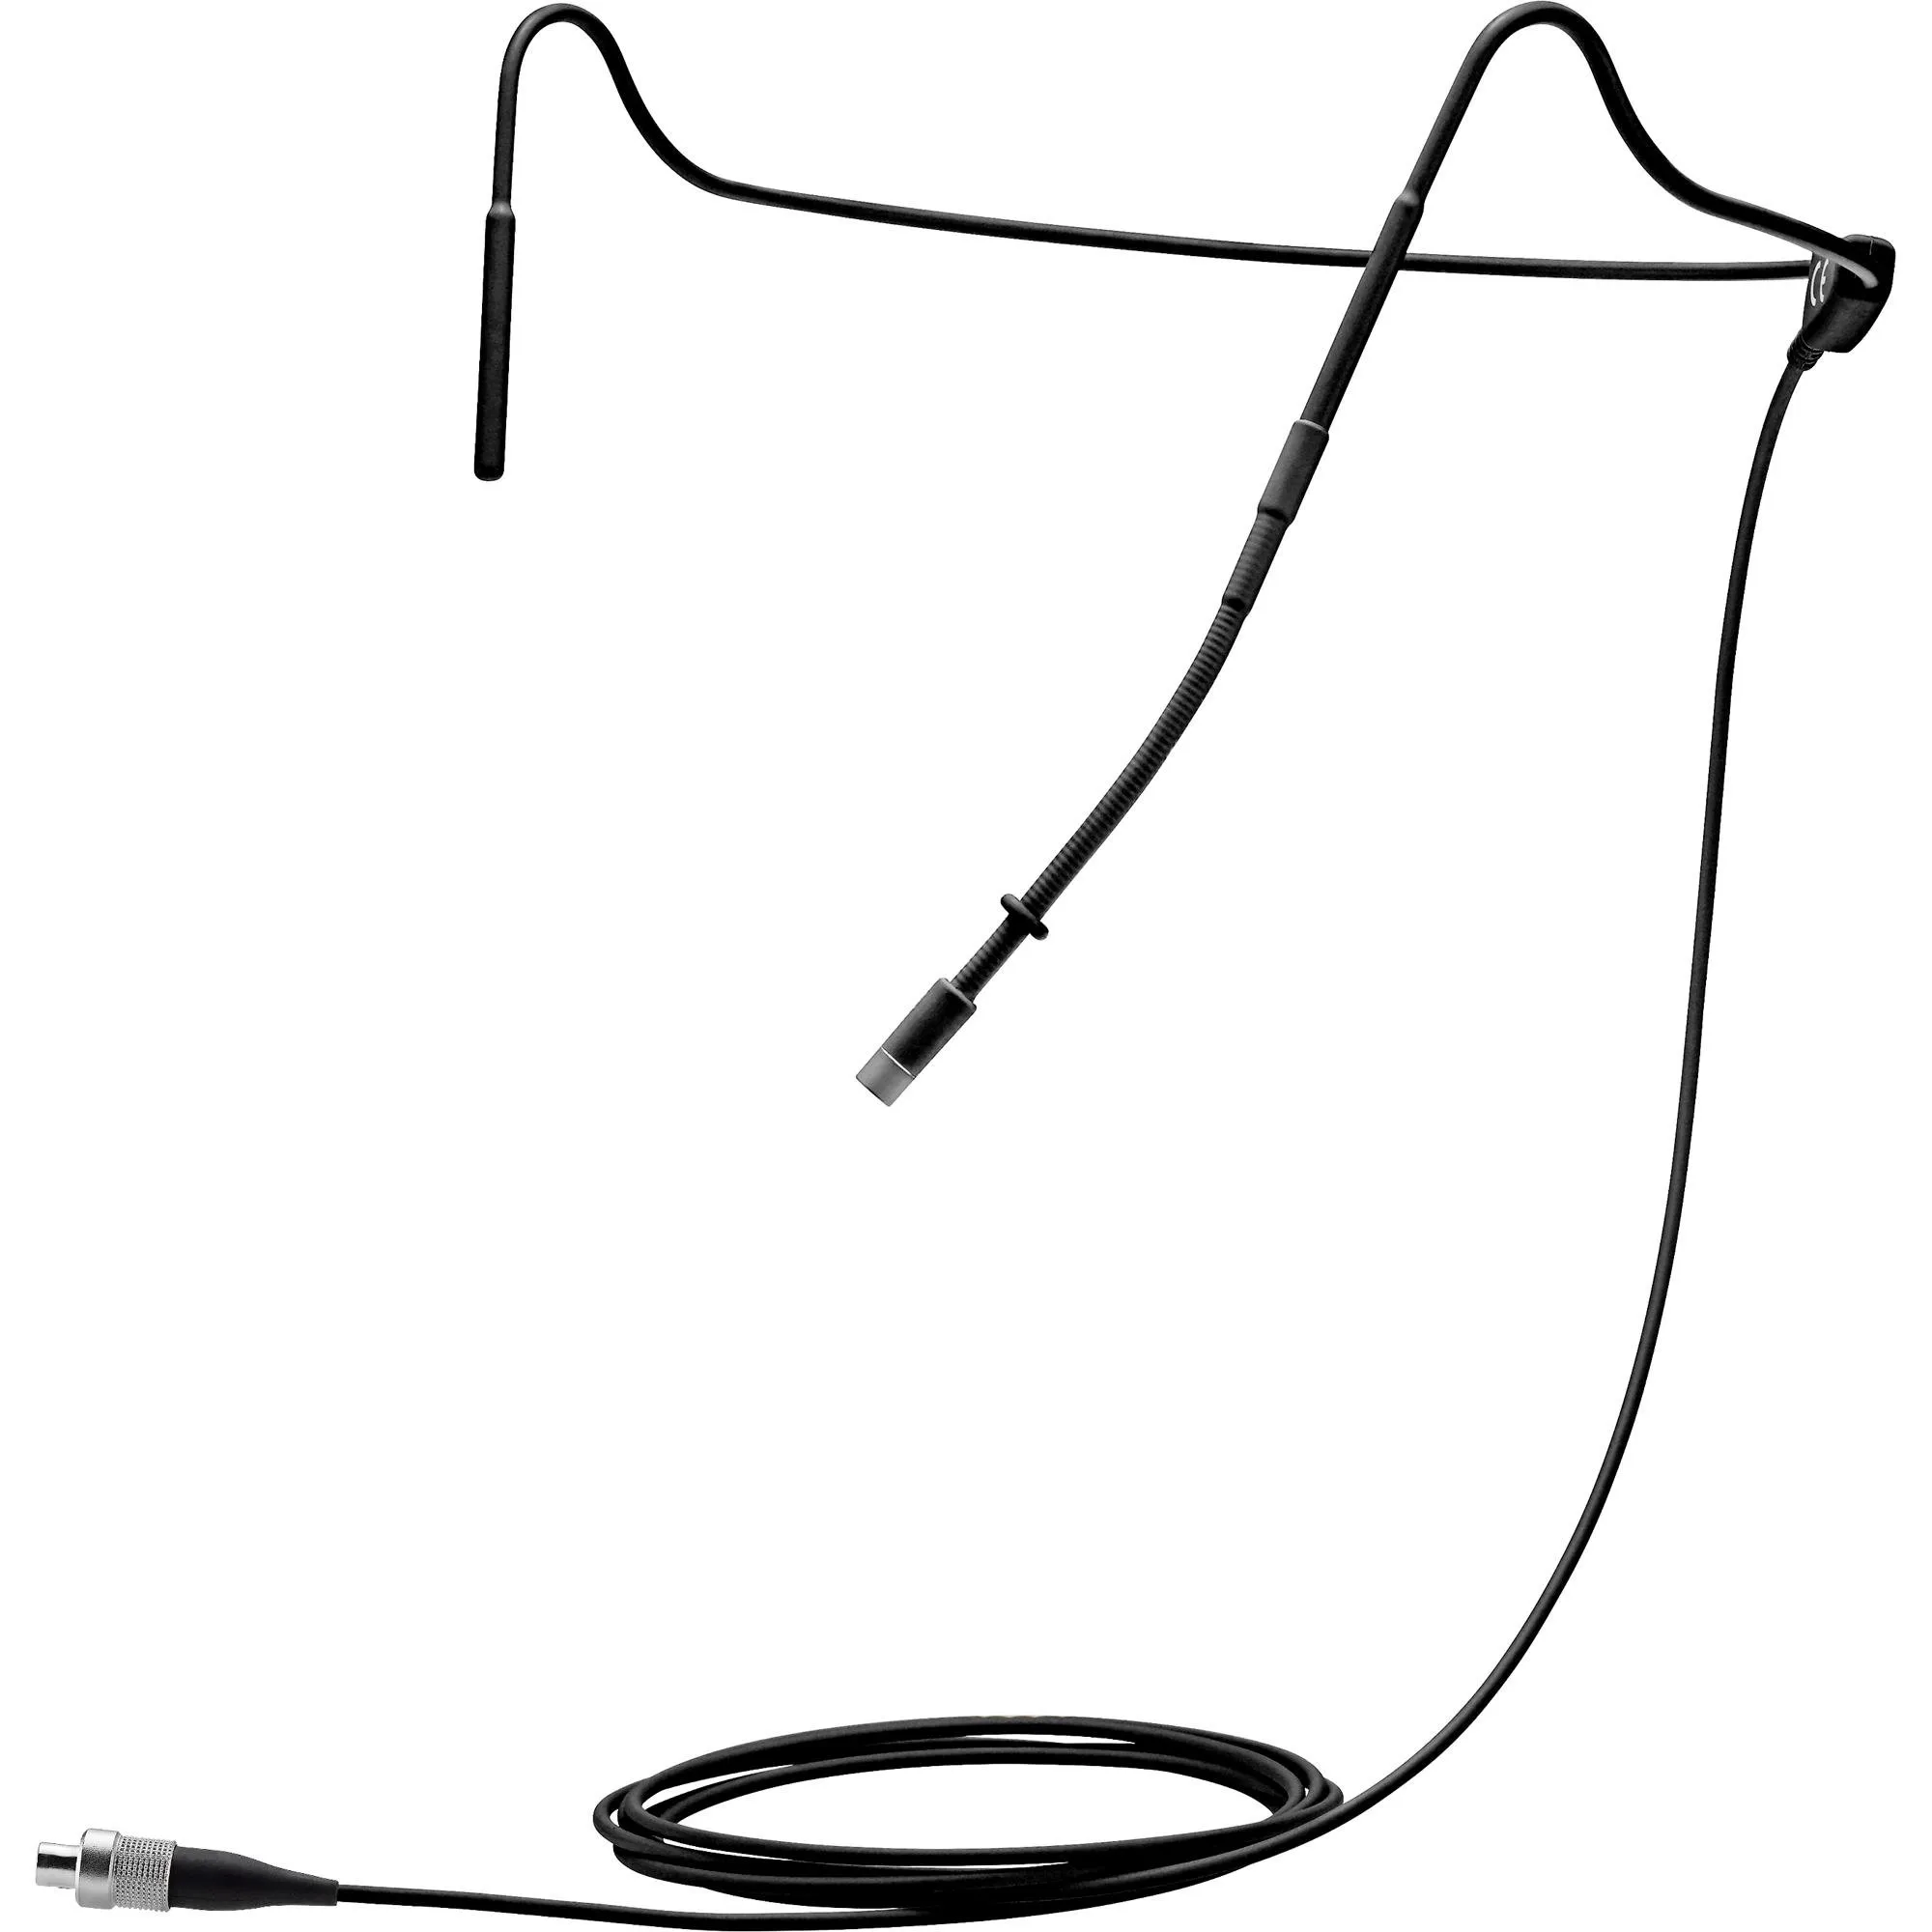 Microfone Headset Sennheiser HS2 Condensador Preto por 5.715,99 à vista no boleto/pix ou parcele em até 12x sem juros. Compre na loja Mundomax!